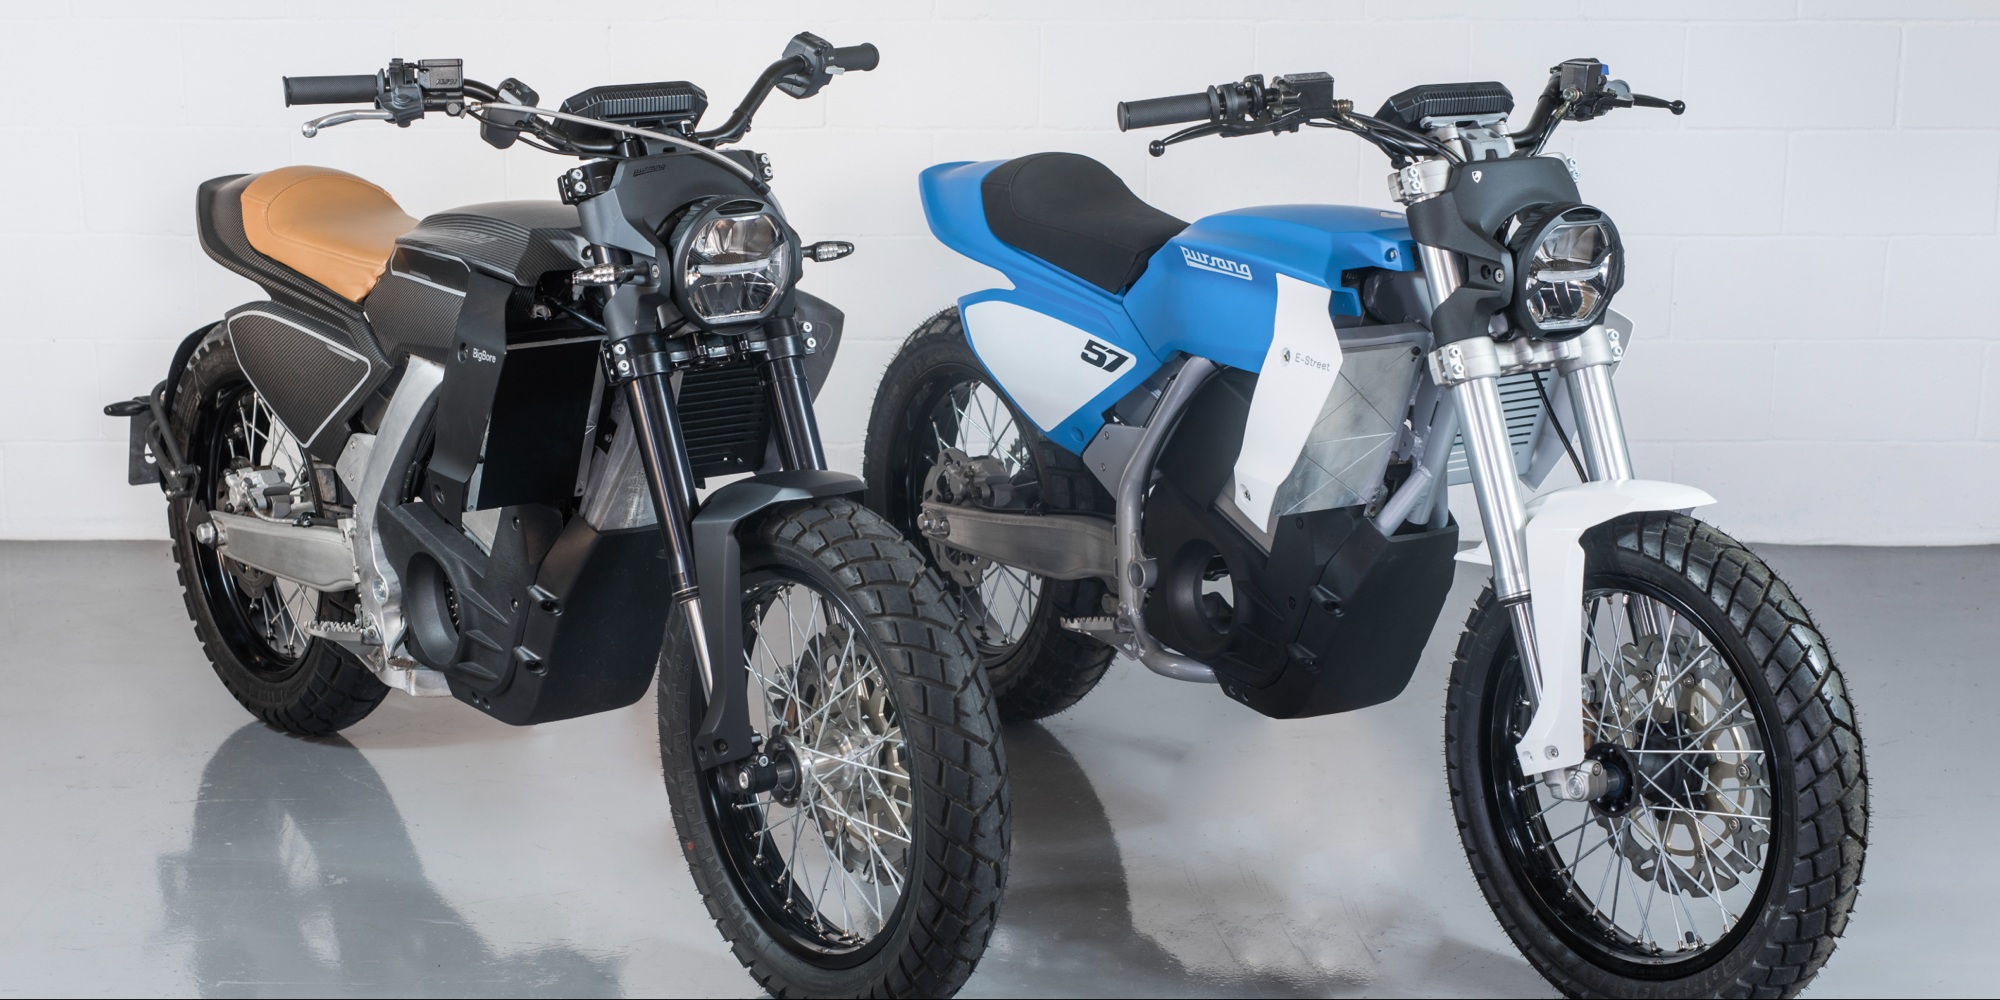 Le fabricant barcelonais Pursang lance la production de ses motos électriques